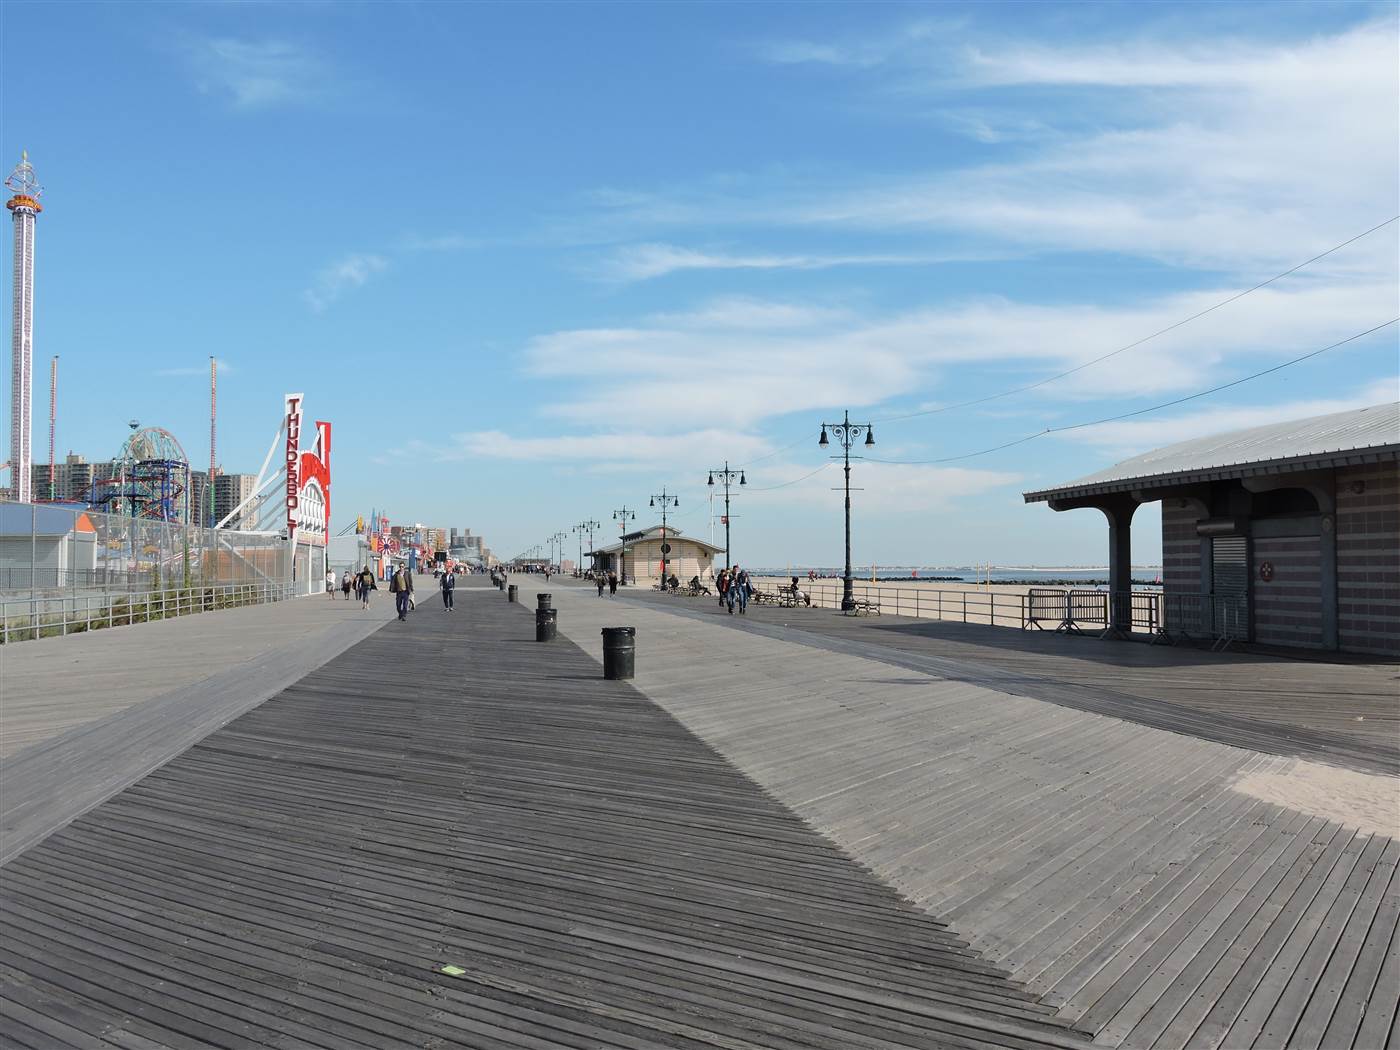 Boardwalk, Coney Island